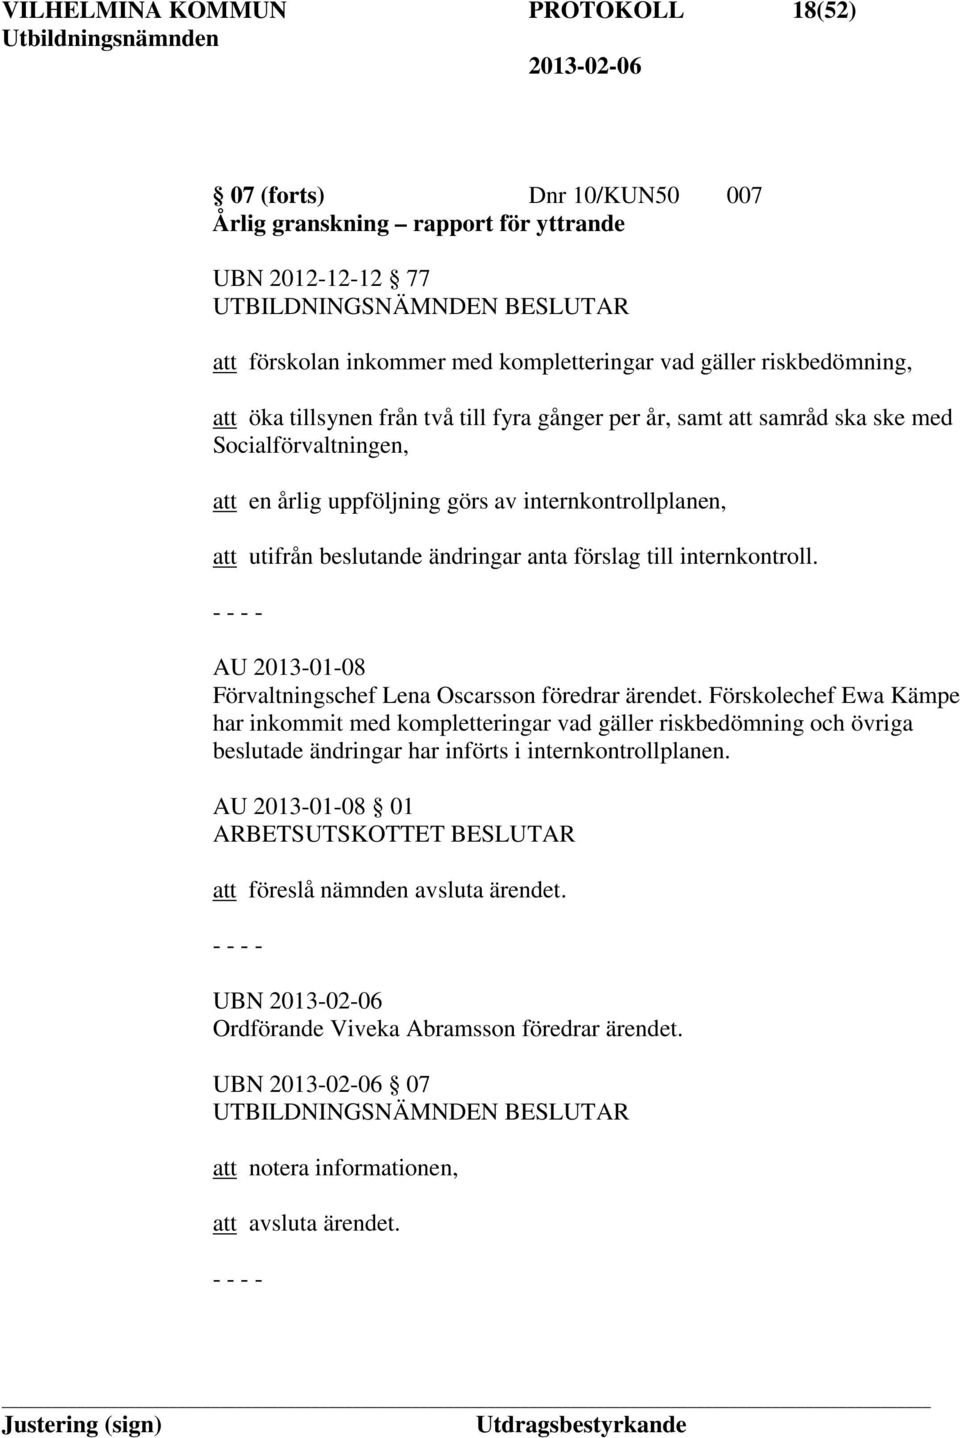 förslag till internkontroll. AU 2013-01-08 Förvaltningschef Lena Oscarsson föredrar ärendet.